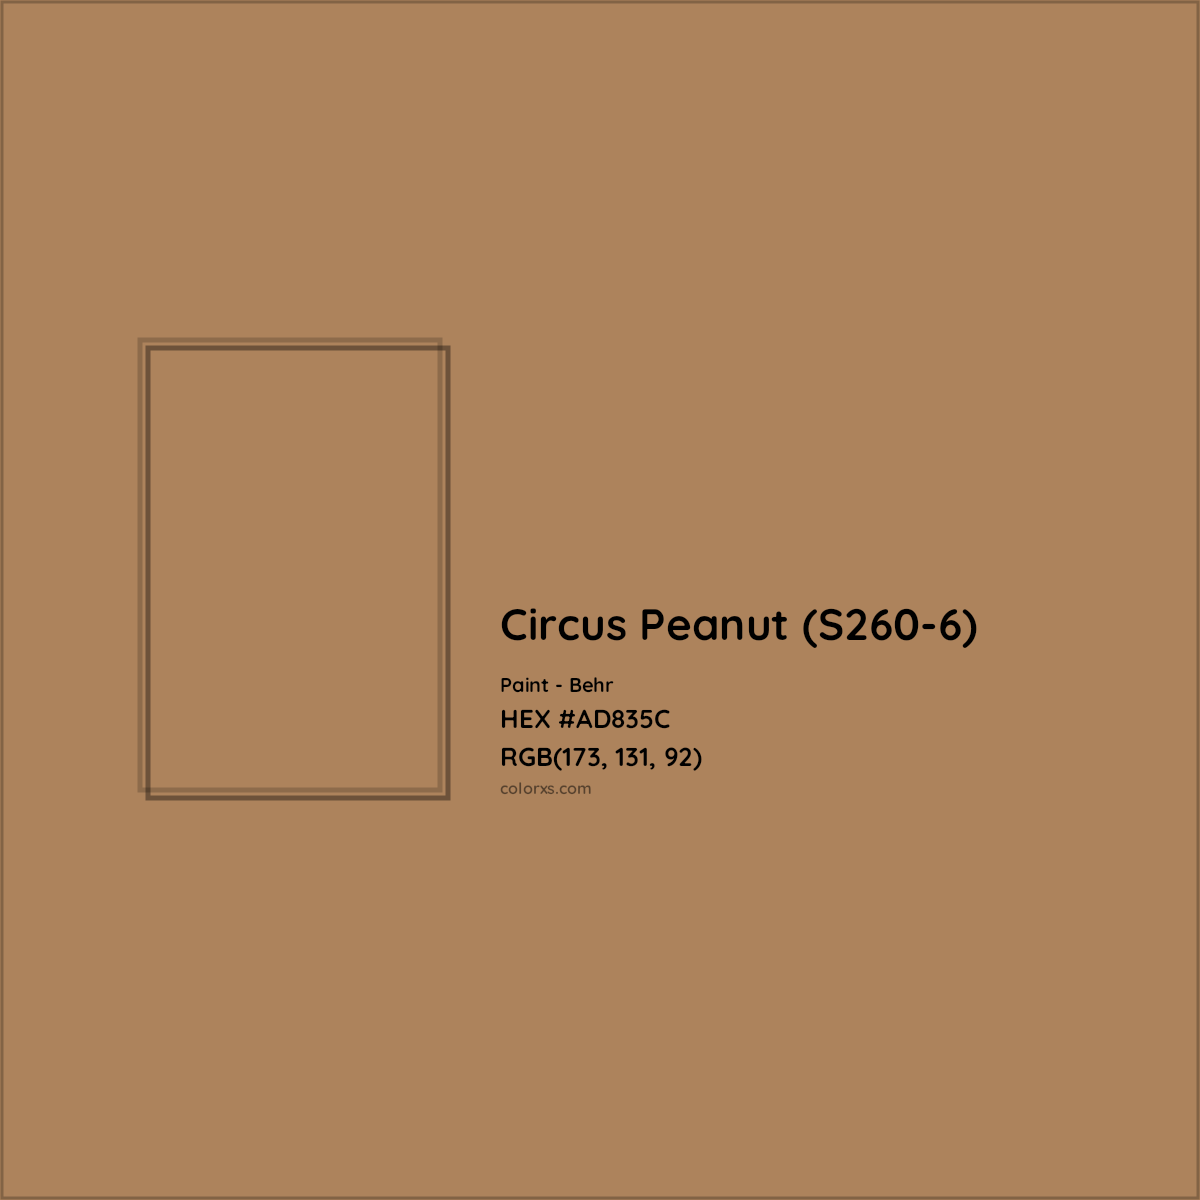 HEX #AD835C Circus Peanut (S260-6) Paint Behr - Color Code